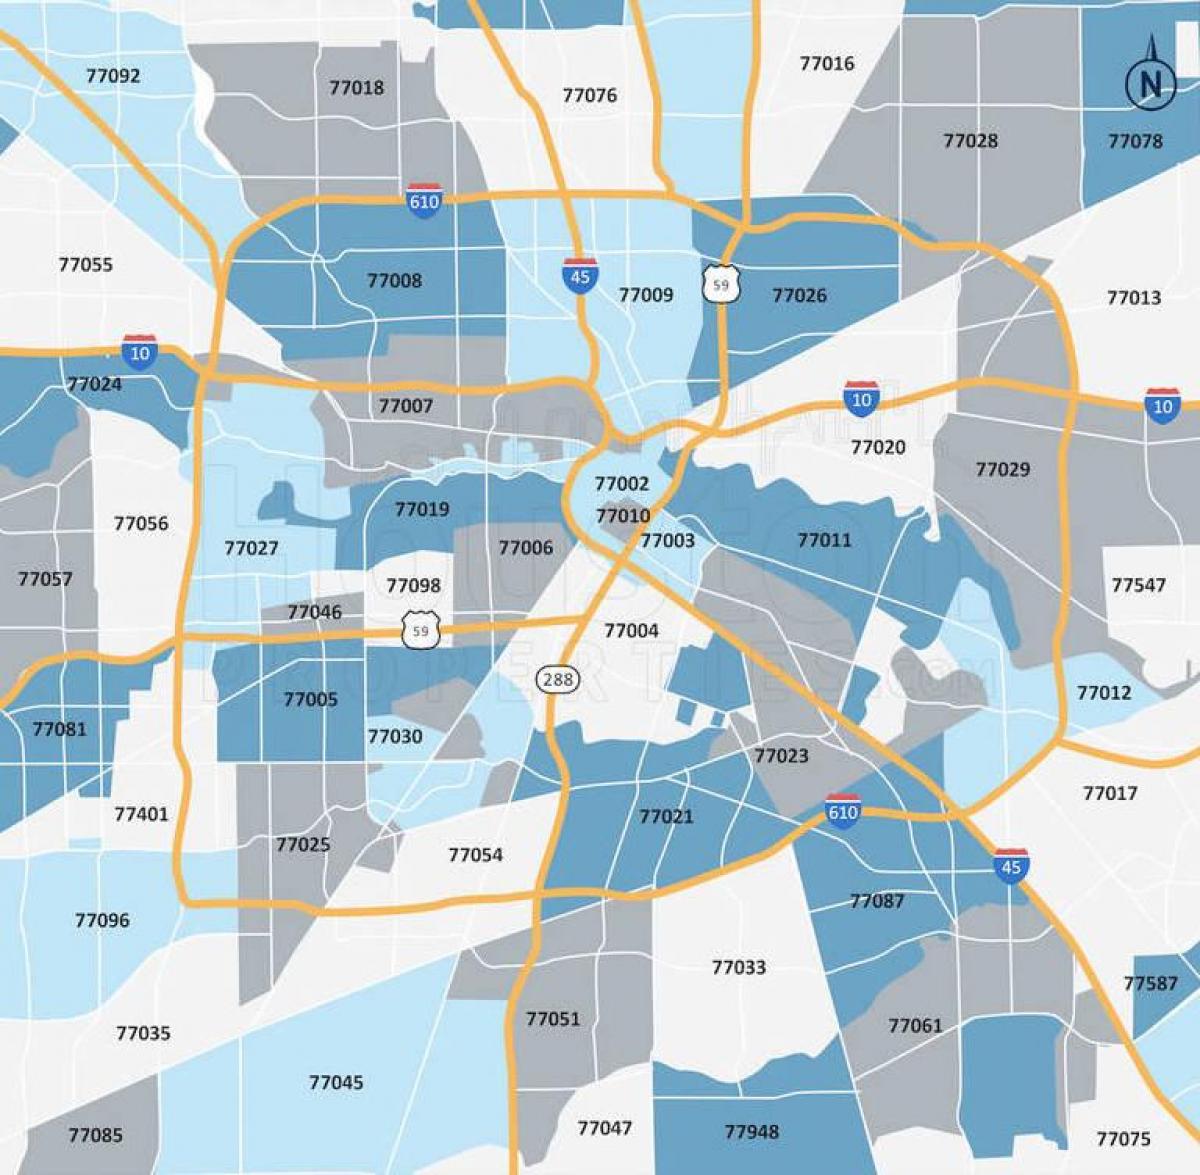 Mapa de códigos postales de Houston